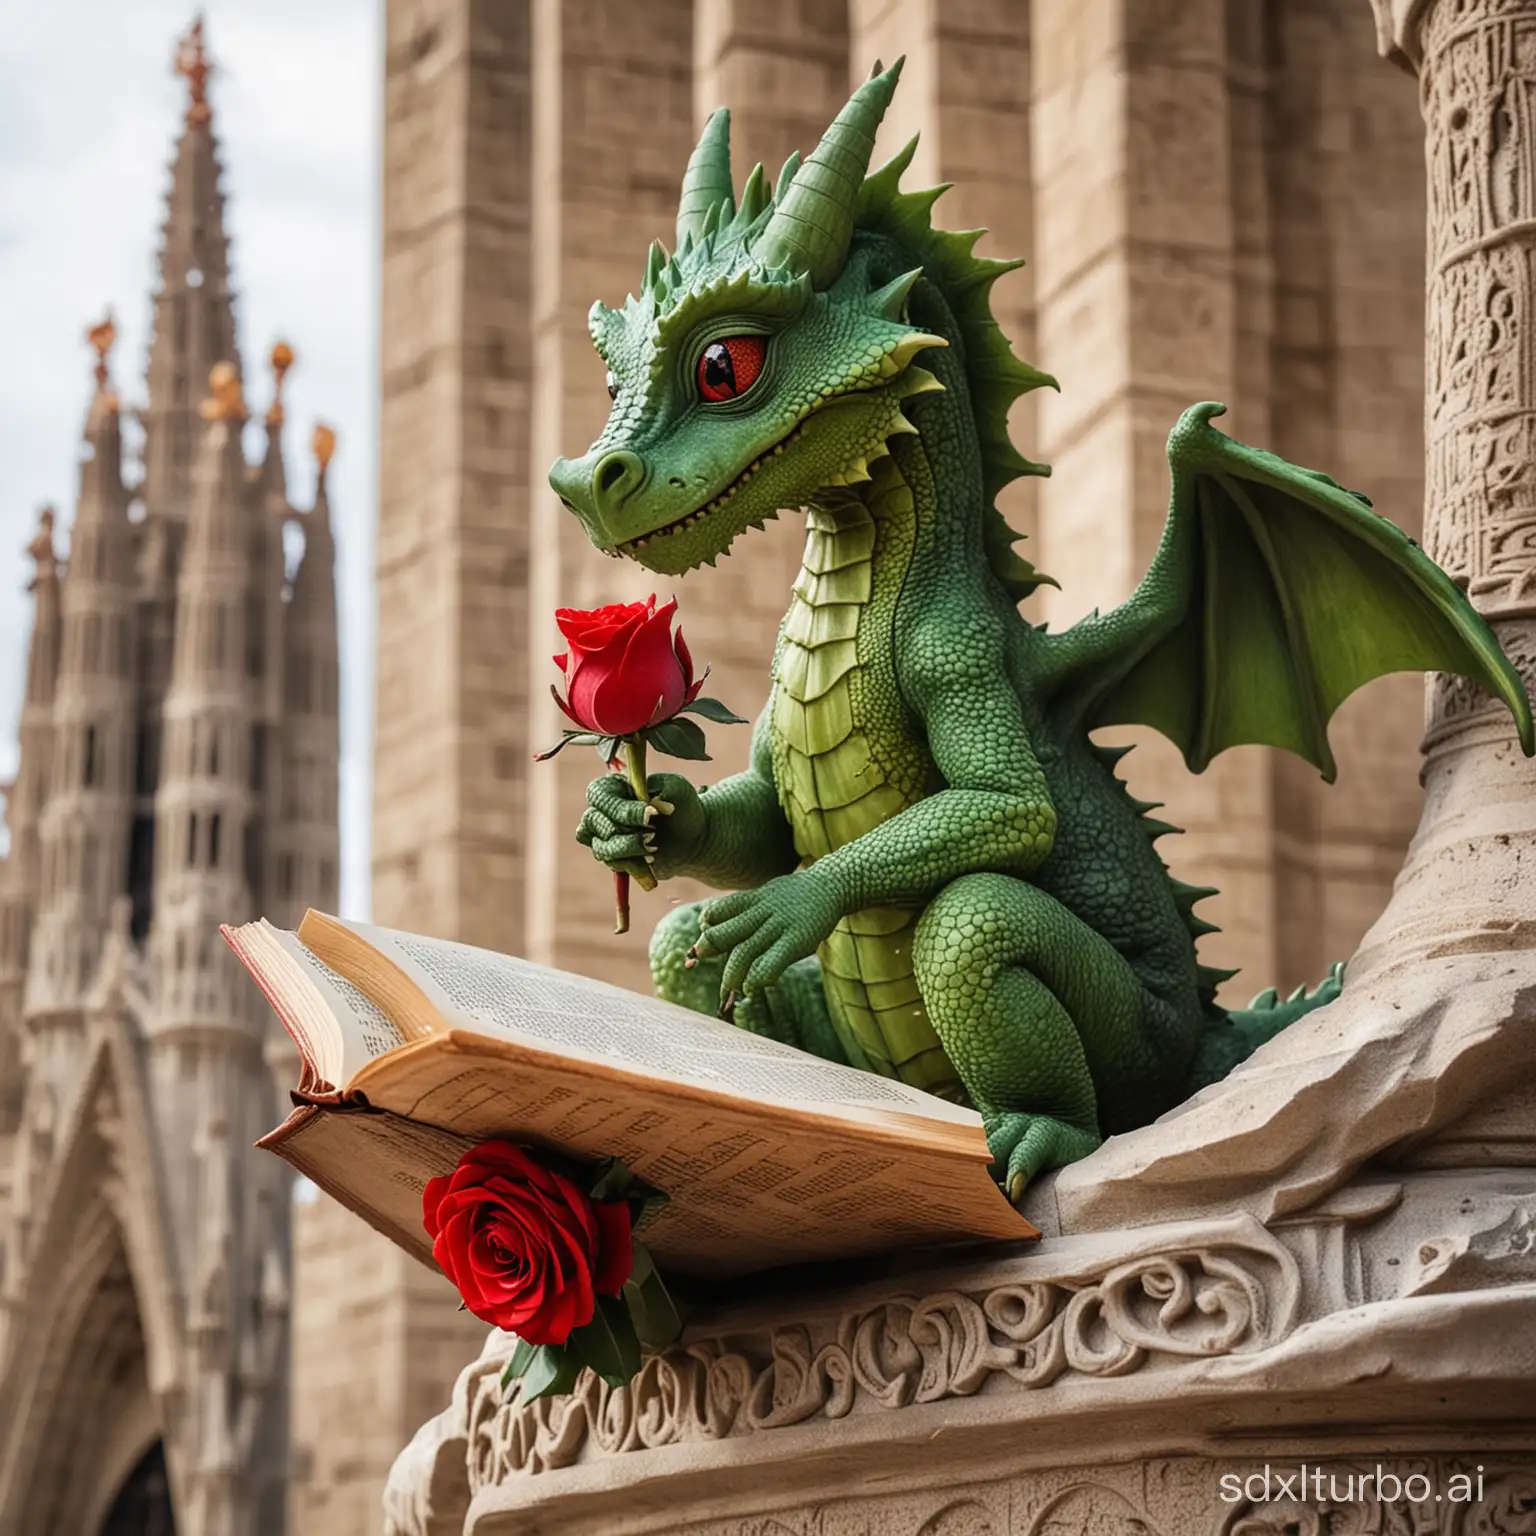 Un pequeño dragon verde con una mirada tierna leyendo un libro antiguo con una rosa roja en la mano y sentado encima de una torre del monumento de la Sagrada Familia de Barcelona